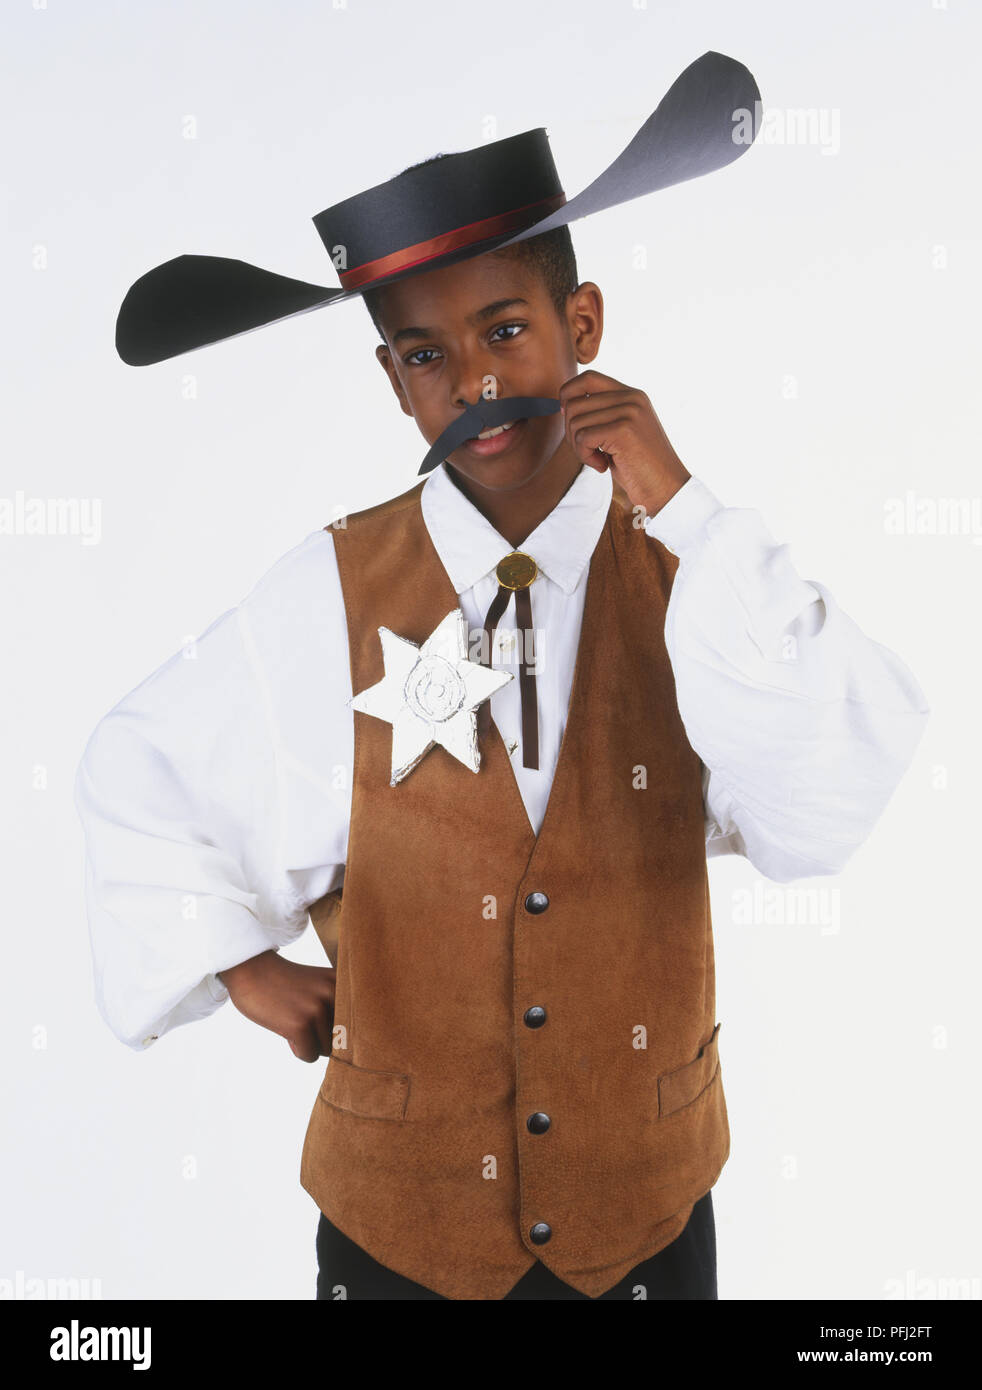 Junger Mann, ein Sheriff Kostüm, einschließlich Hut, Weste und Stern,  Taille, Vorderansicht Stockfotografie - Alamy